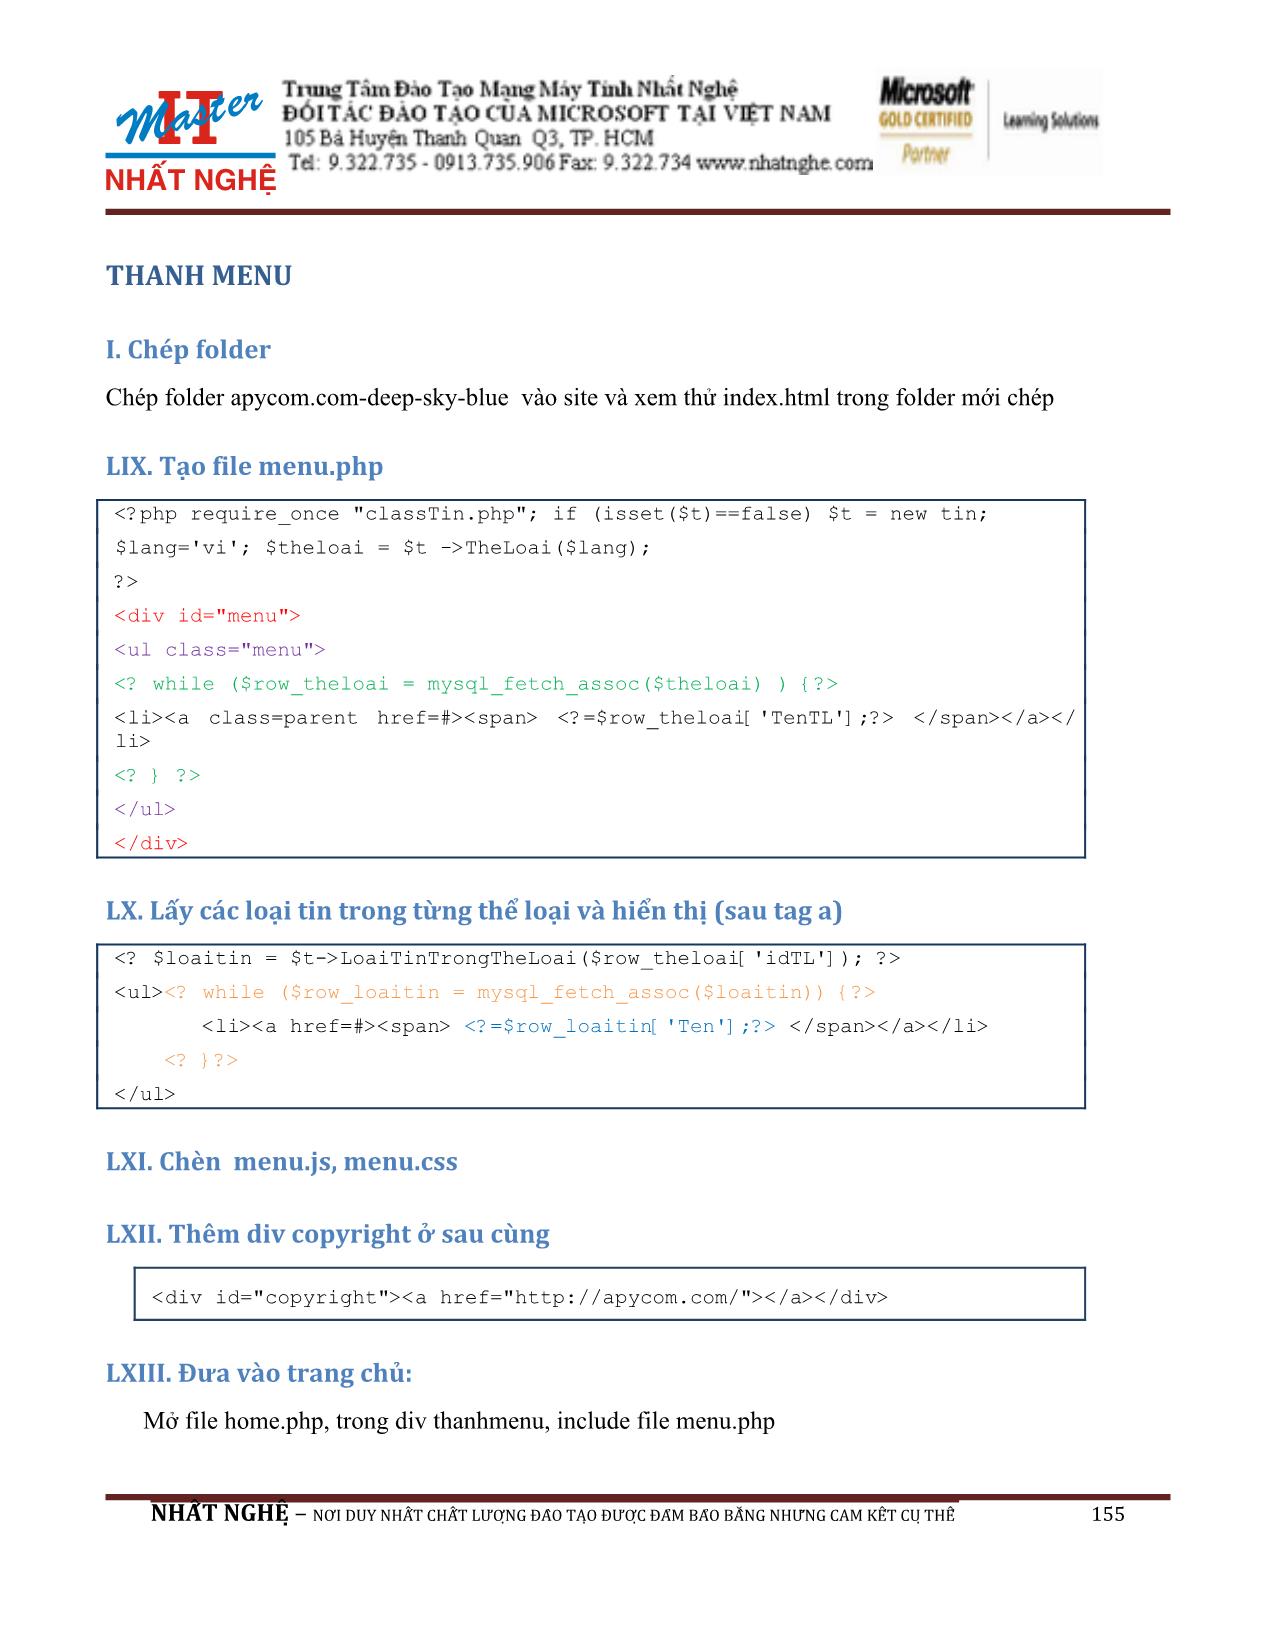 Giáo trình Hướng dẫn thiết kế Web PHP và MySQL (Phần 2) trang 7